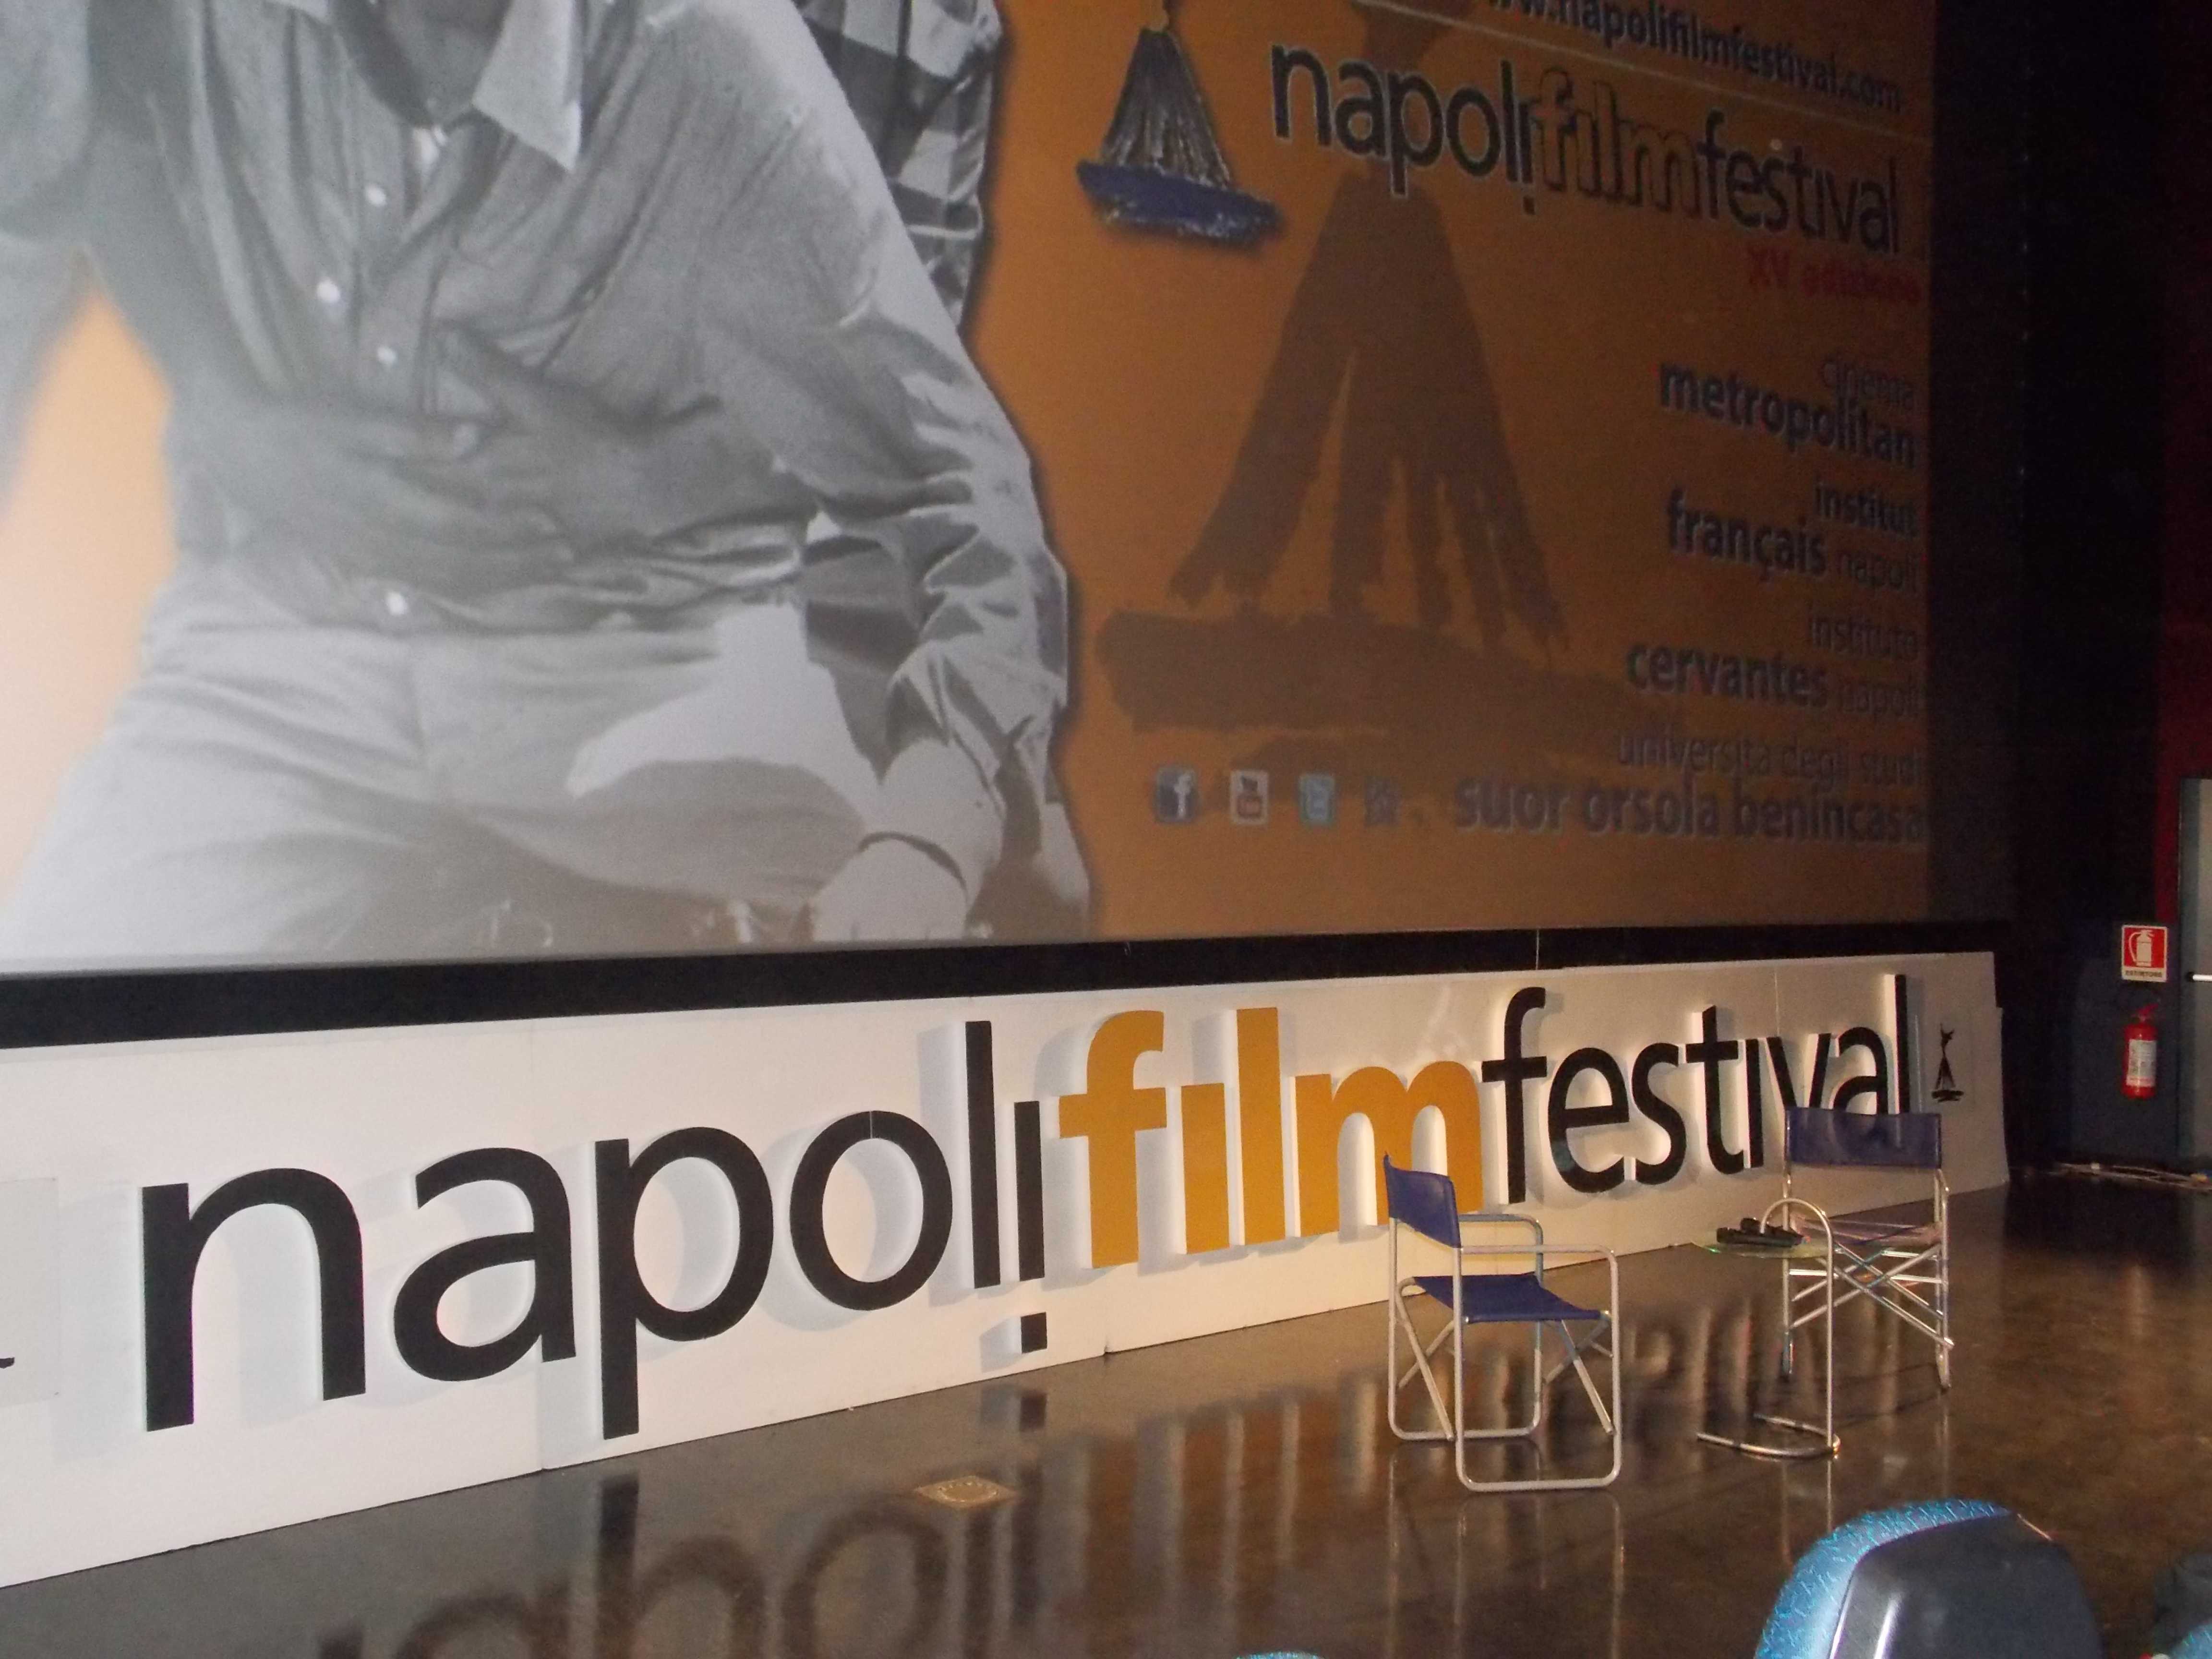 Napoli Film Festival 2013, gran finale con Sergio Rubini